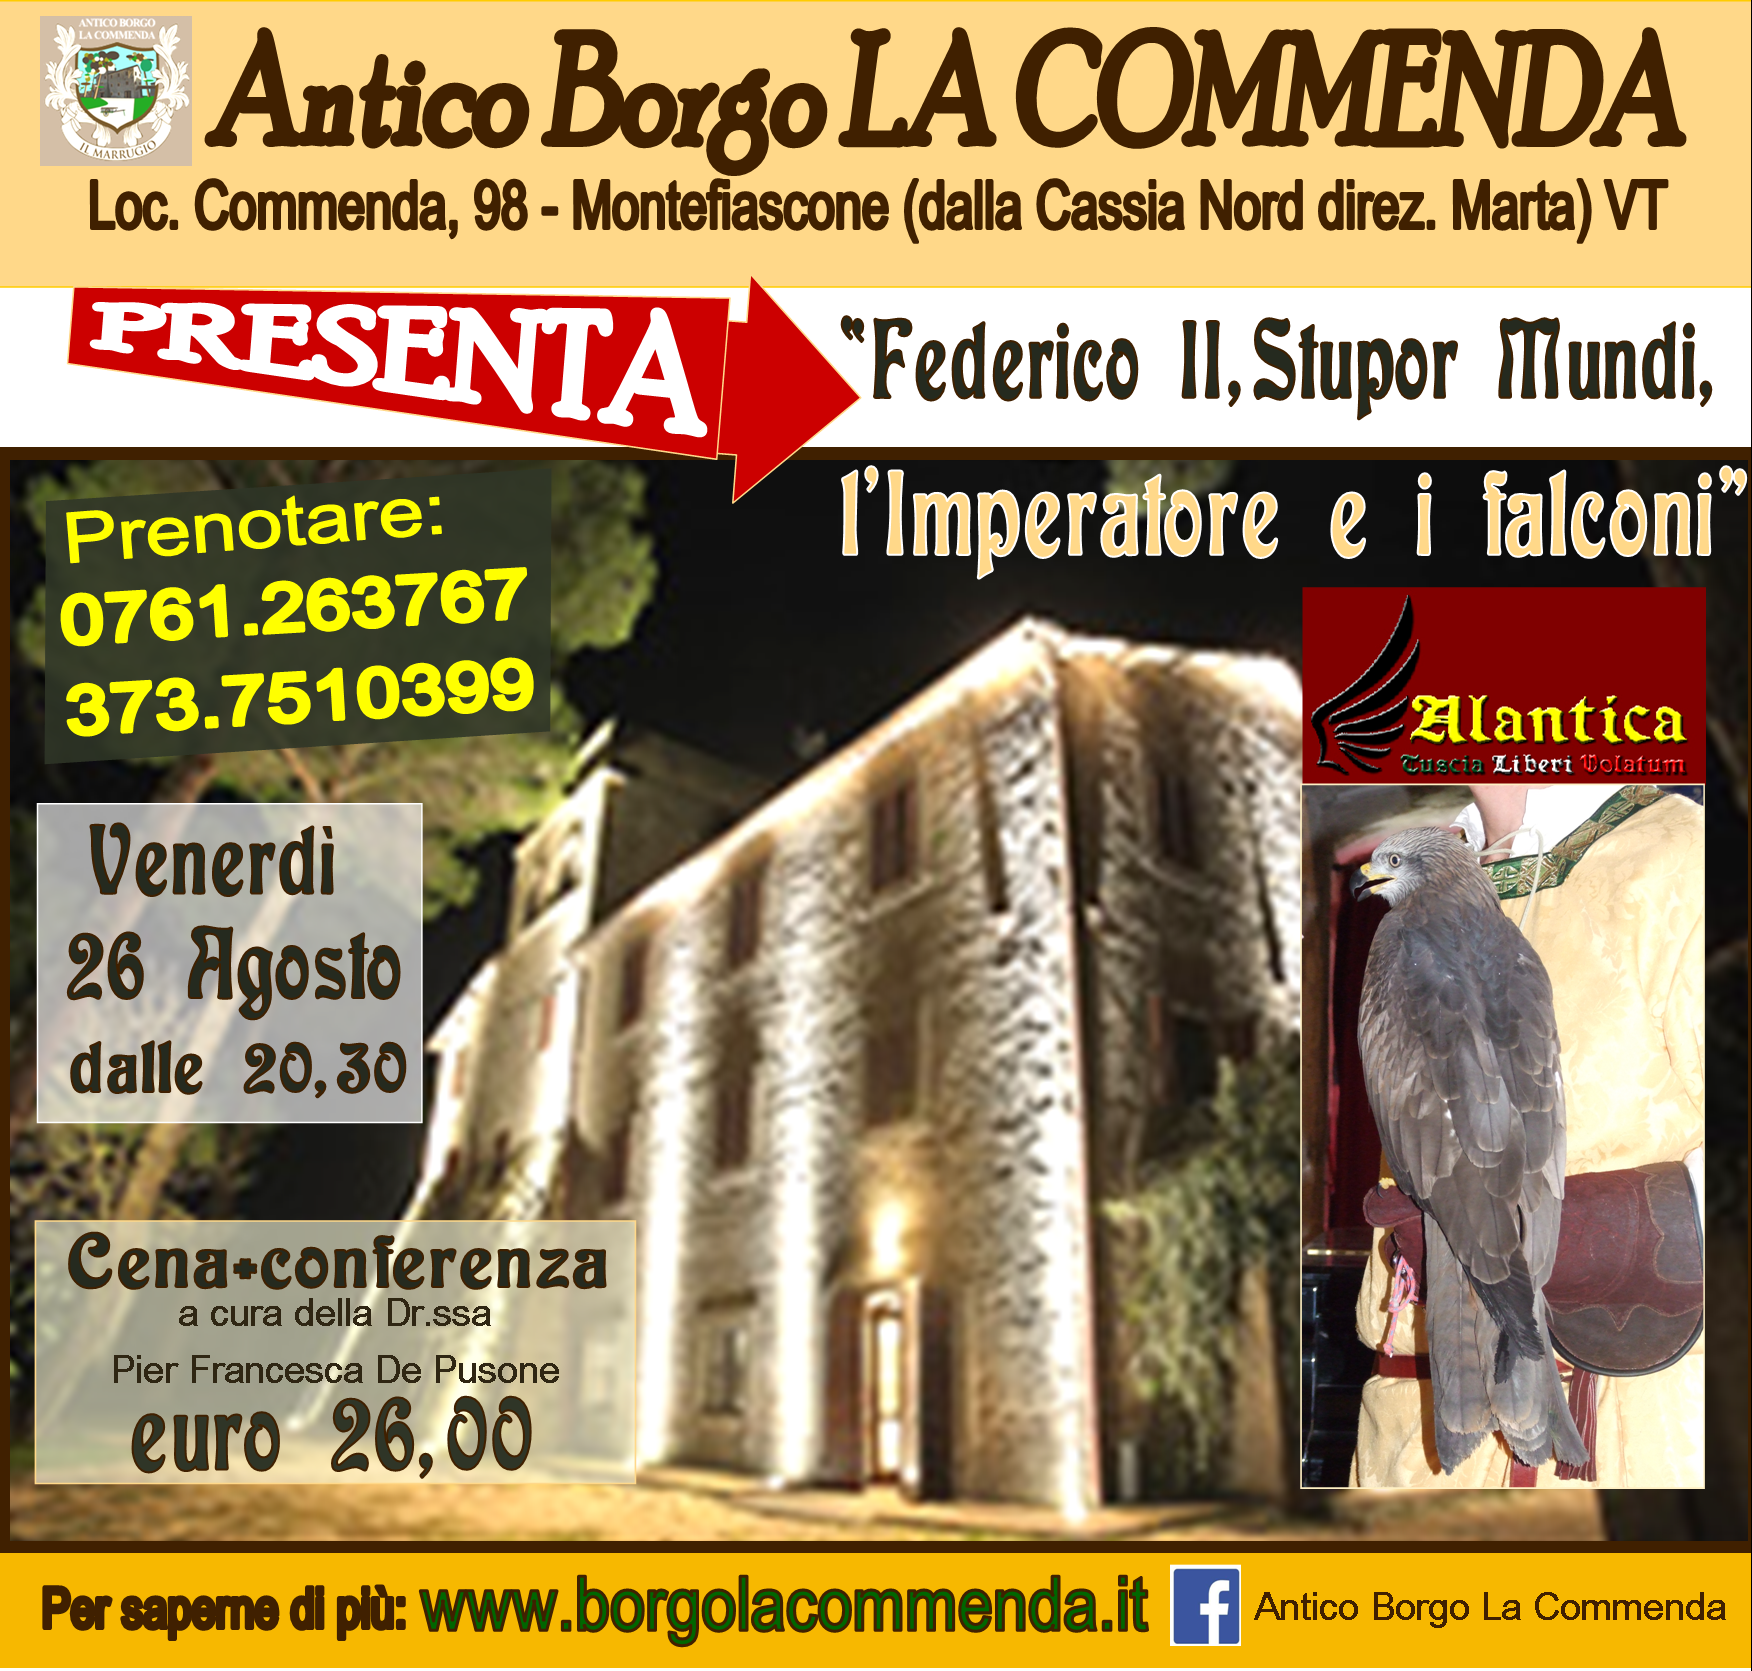 All’Antico Borgo La Commenda venerdì 26 agosto riprendono i Convivi:  “Federico II, Stupor Mundi, l’Imperatore e i falconi”